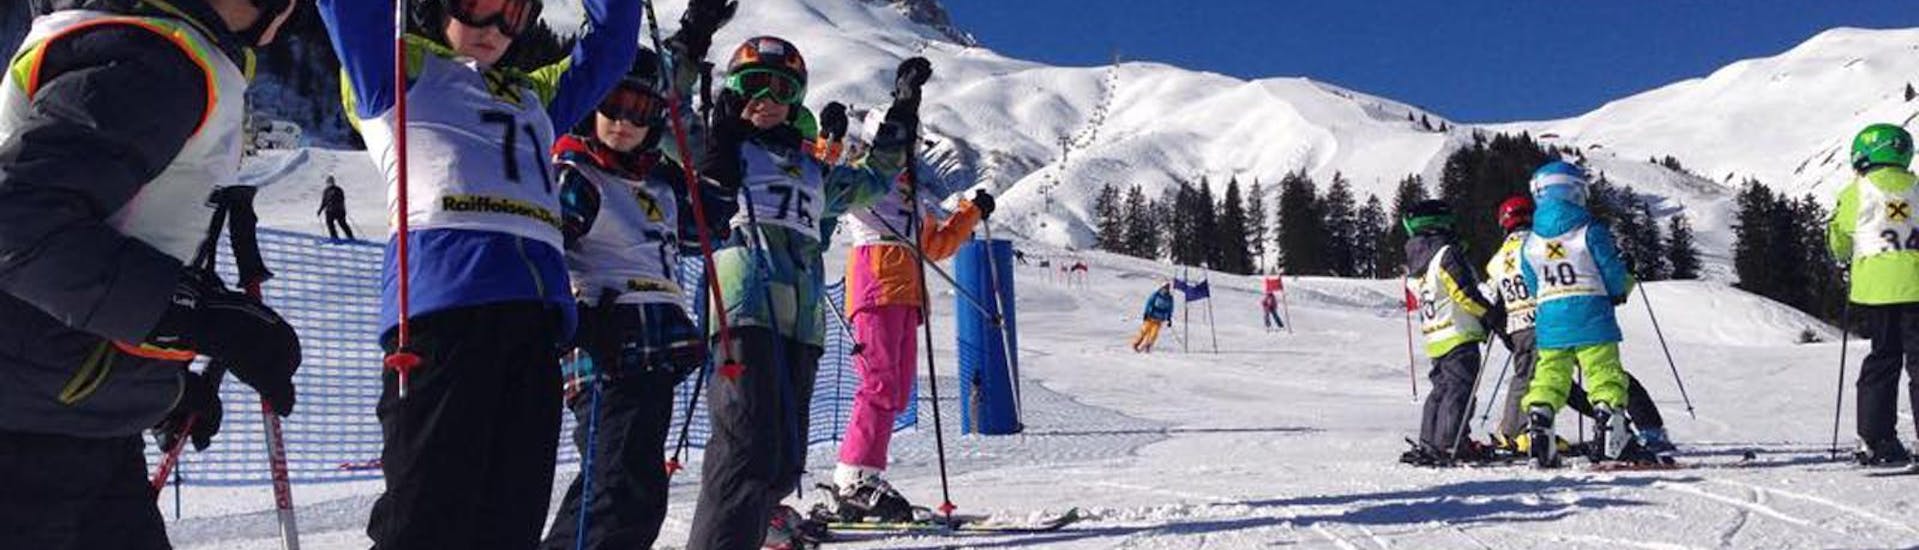 Clases de esquí para niños a partir de 4 años para principiantes con Ski School Warth.